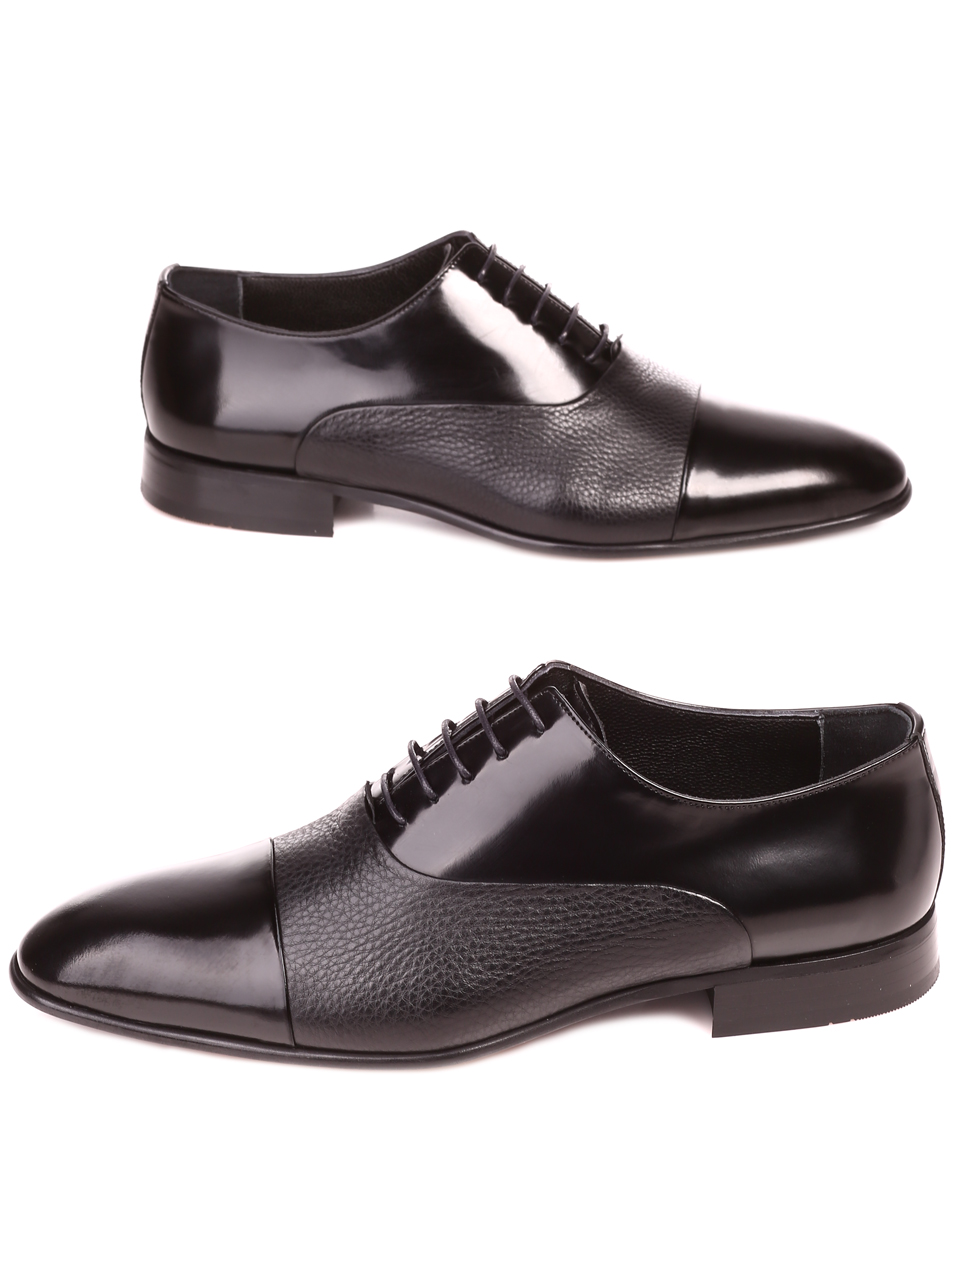 Елегантни мъжки обувки от естествен лак и естествена кожа 7AT-22286 black